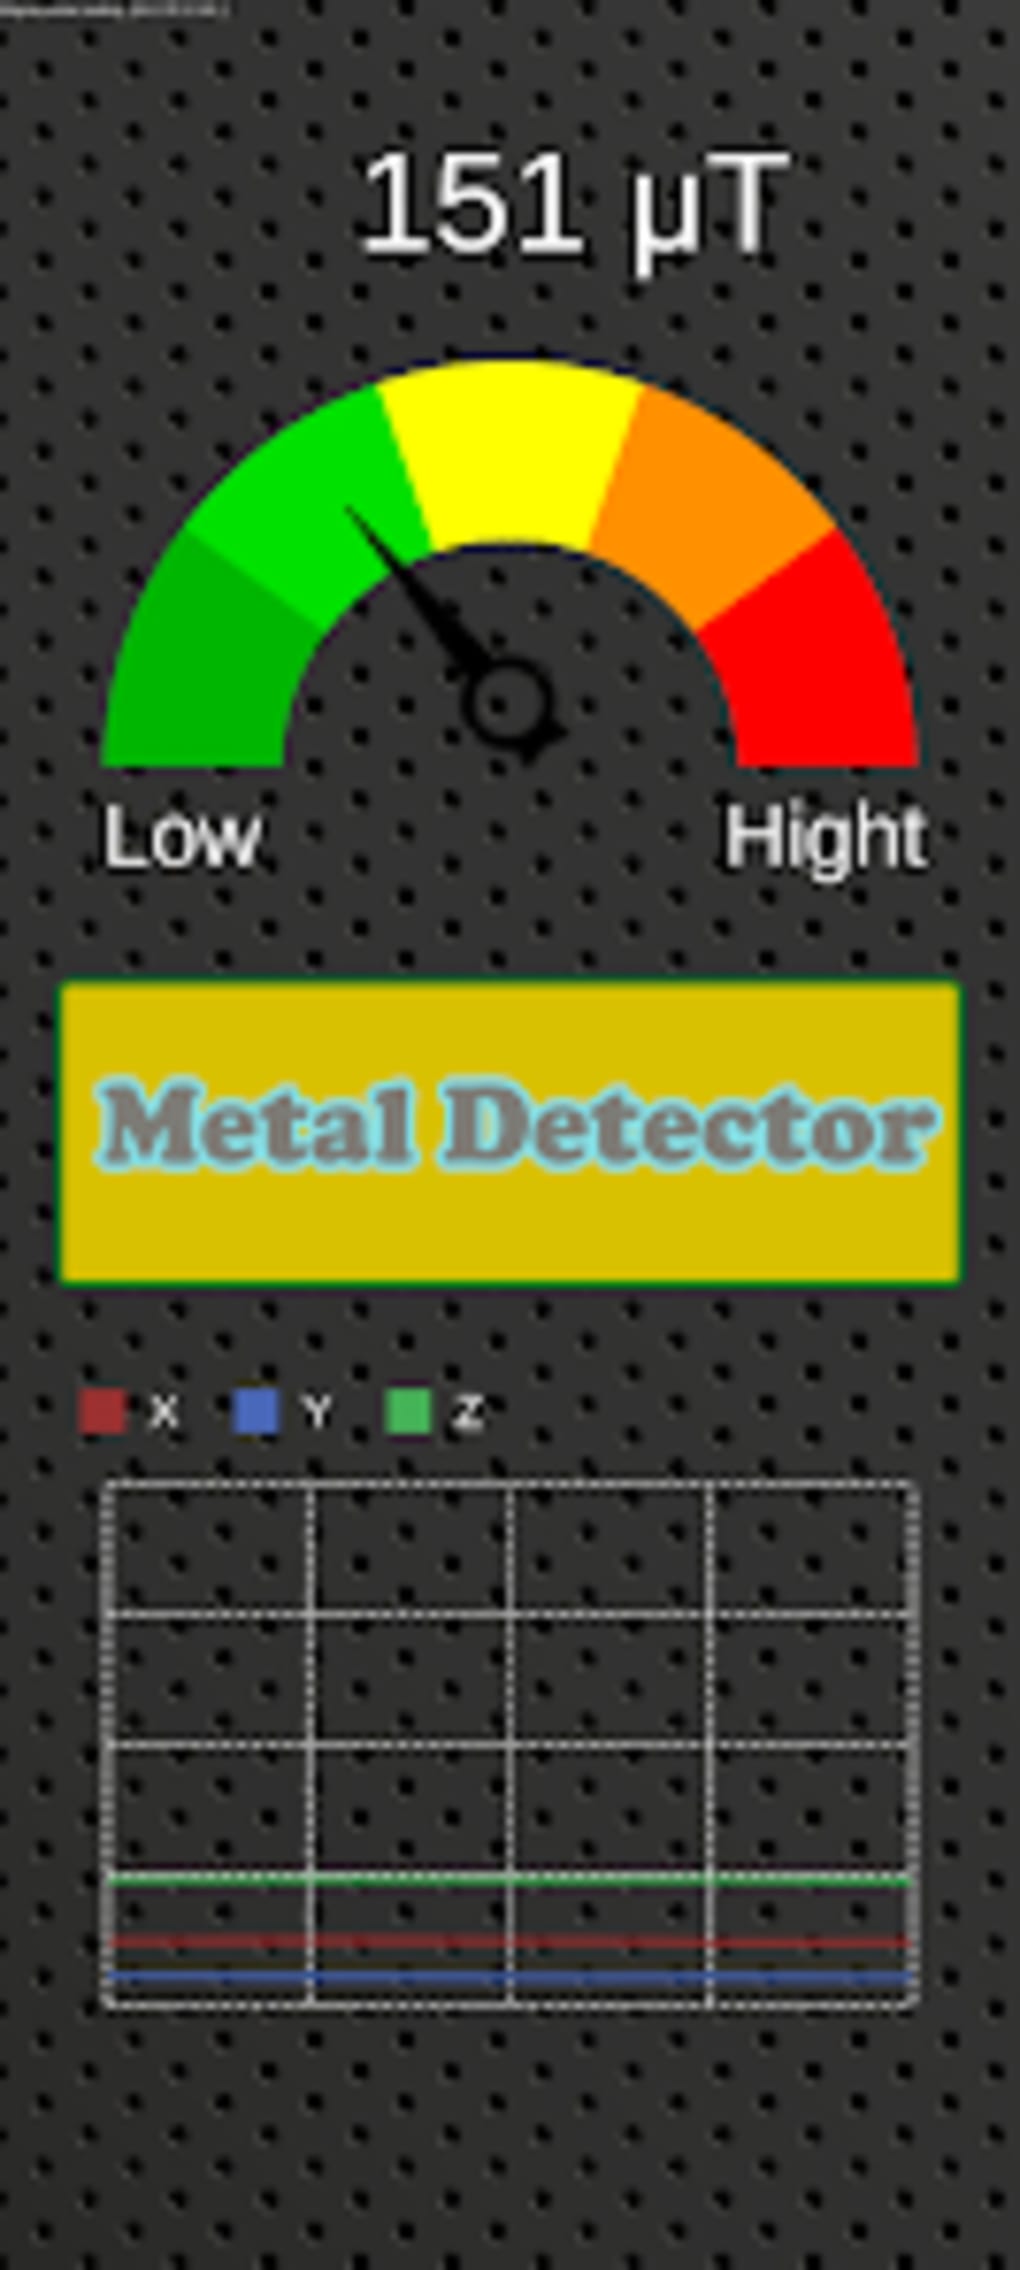 Metal Detector real life radar para Android - Download